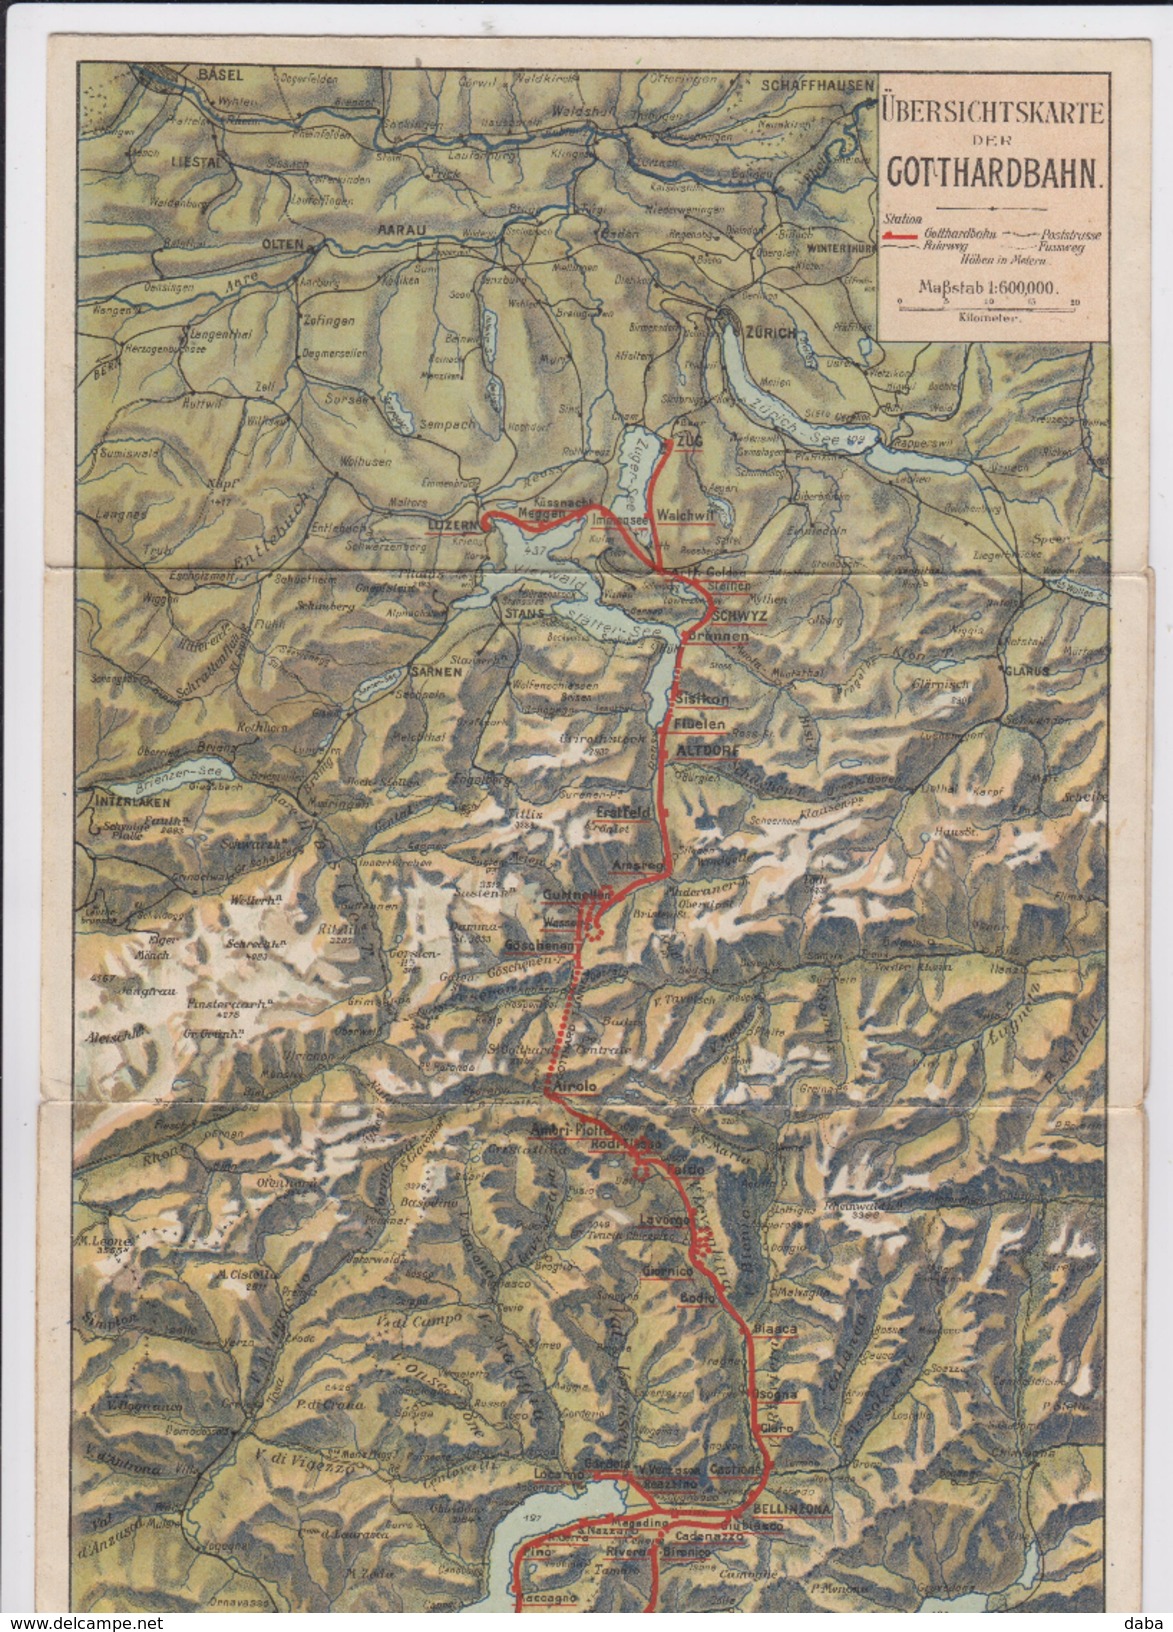 Chemin de Fer. Londres, Suisse, Milan. Gotthard-Bahn. Winter Season. 1905 - 1906. Winterdienst. Servizio Jemale.